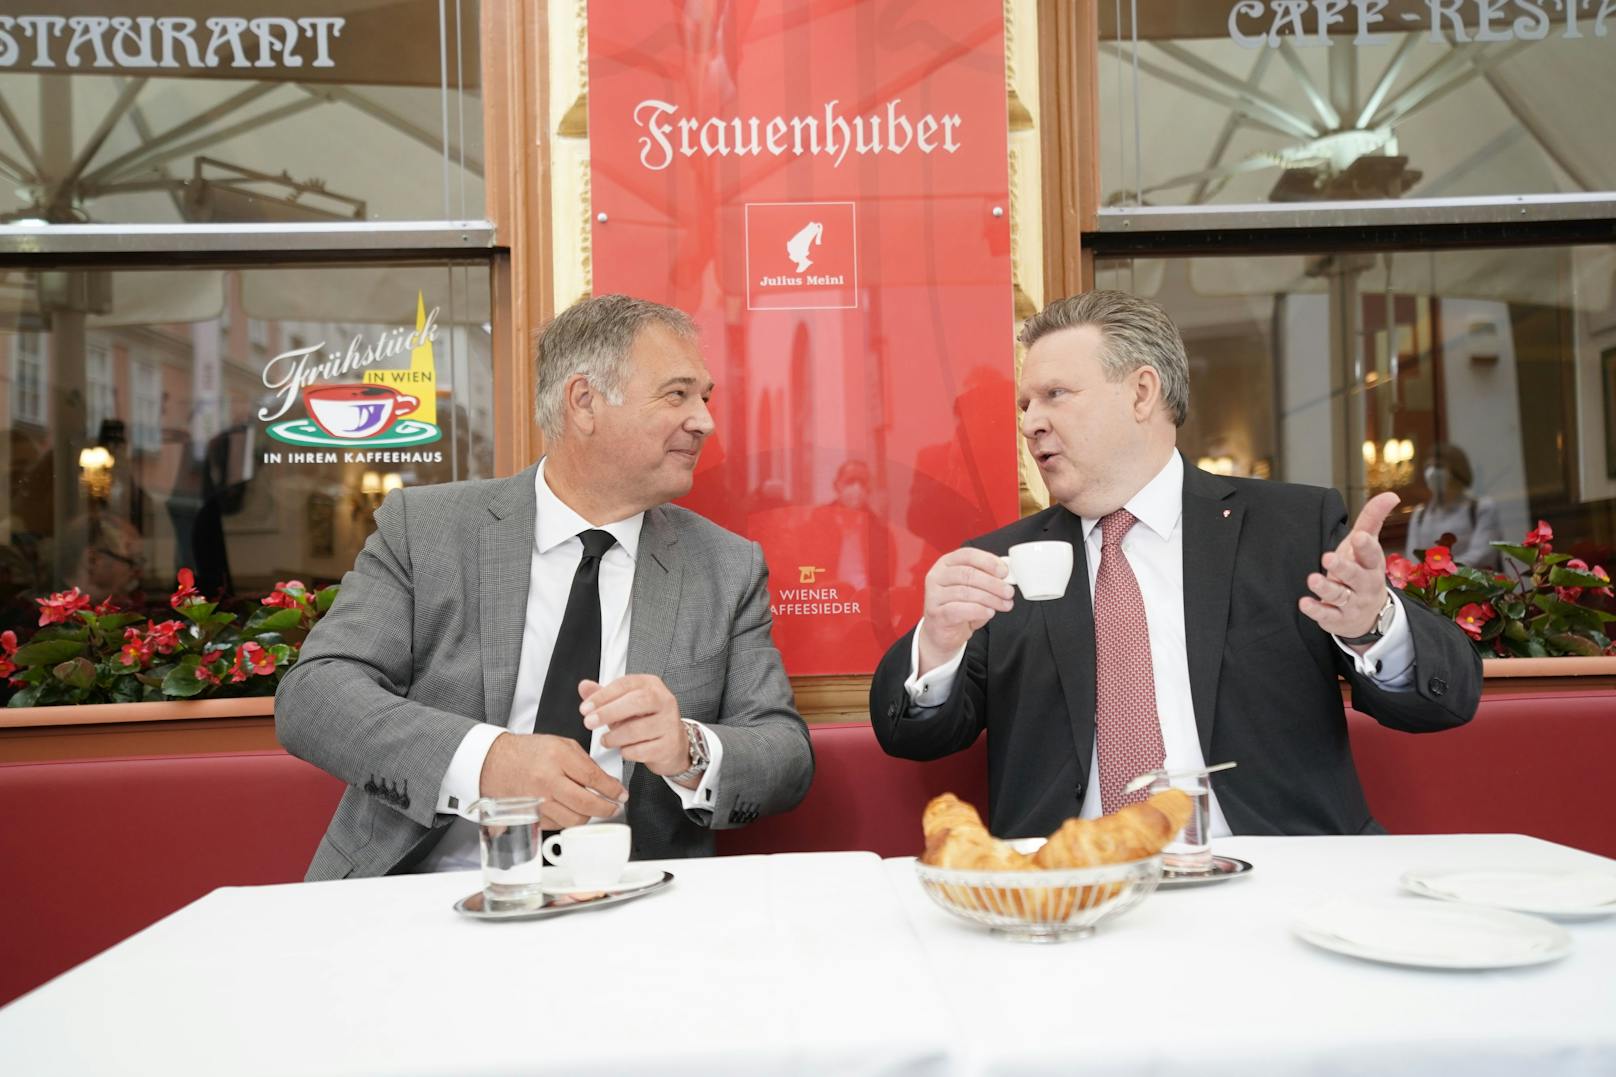 Bürgermeister Ludwig und WKW-Präsident Ruck besuchen ältestes Wiener Kaffeehaus